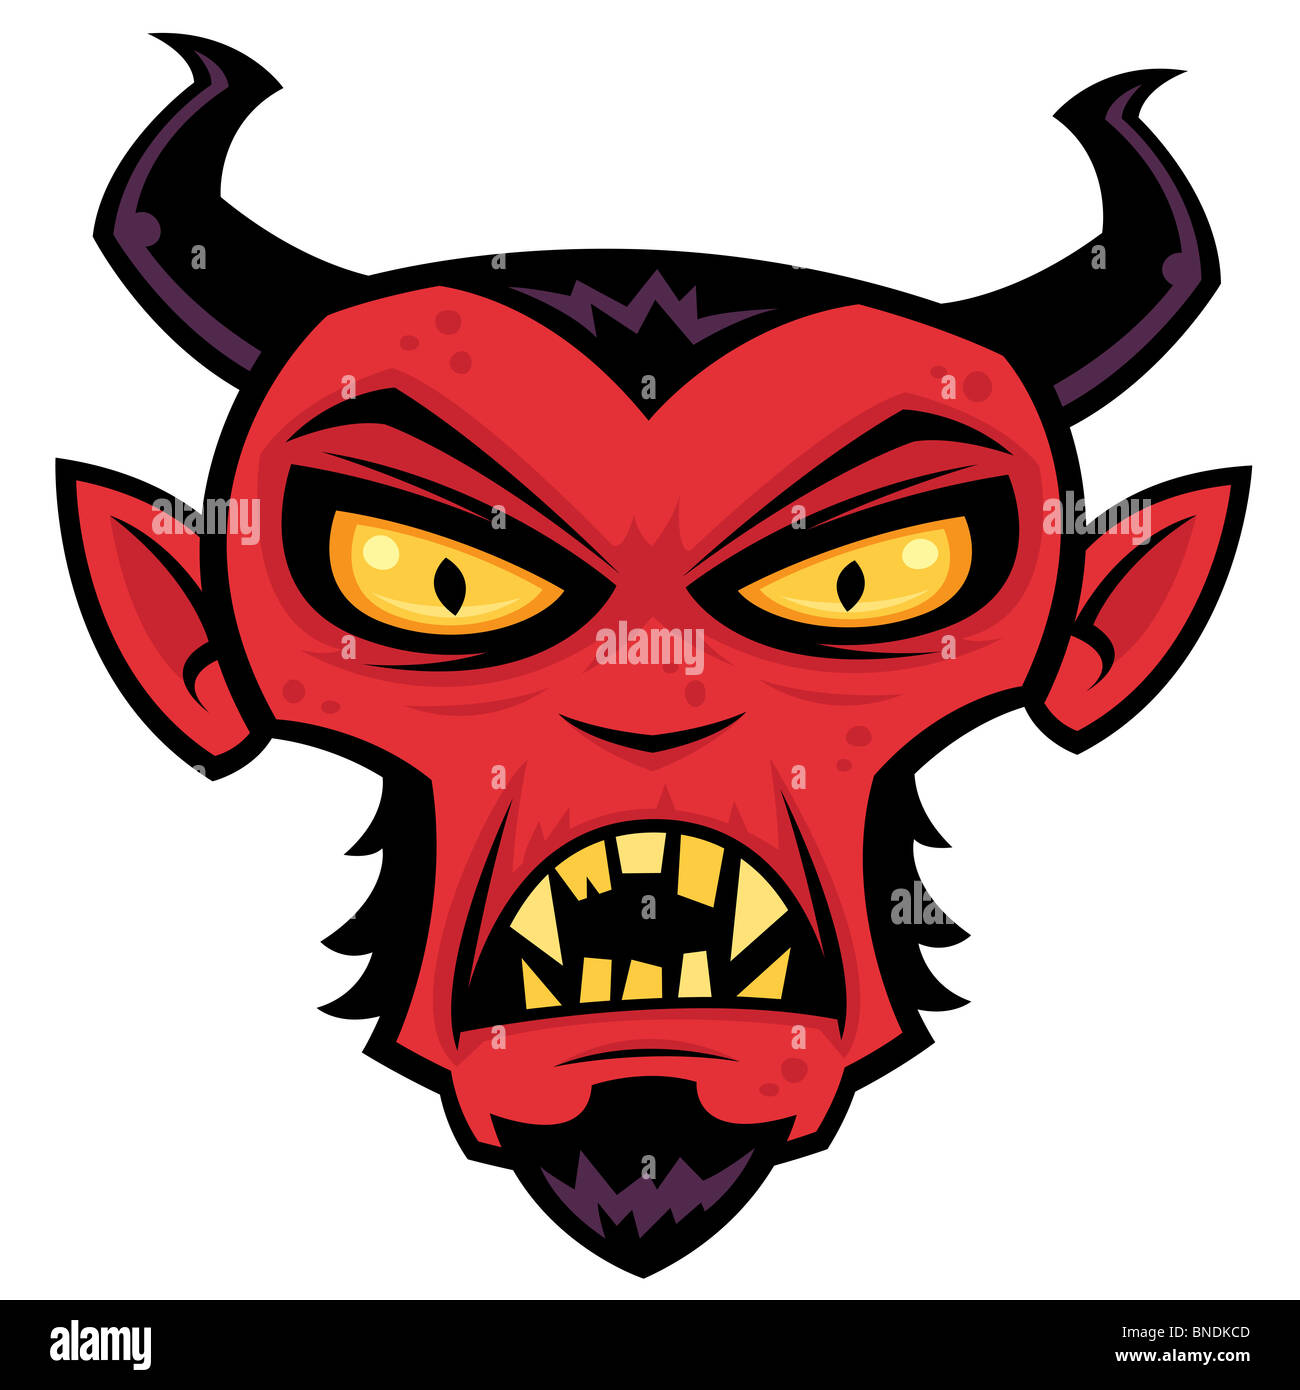 Verrückter Teufel Charakter. Cartoon Illustration eine mittlere rote Teufel-Charakter mit Hörnern, Spitzbart, gelbe Augen und Zähne. Stockfoto